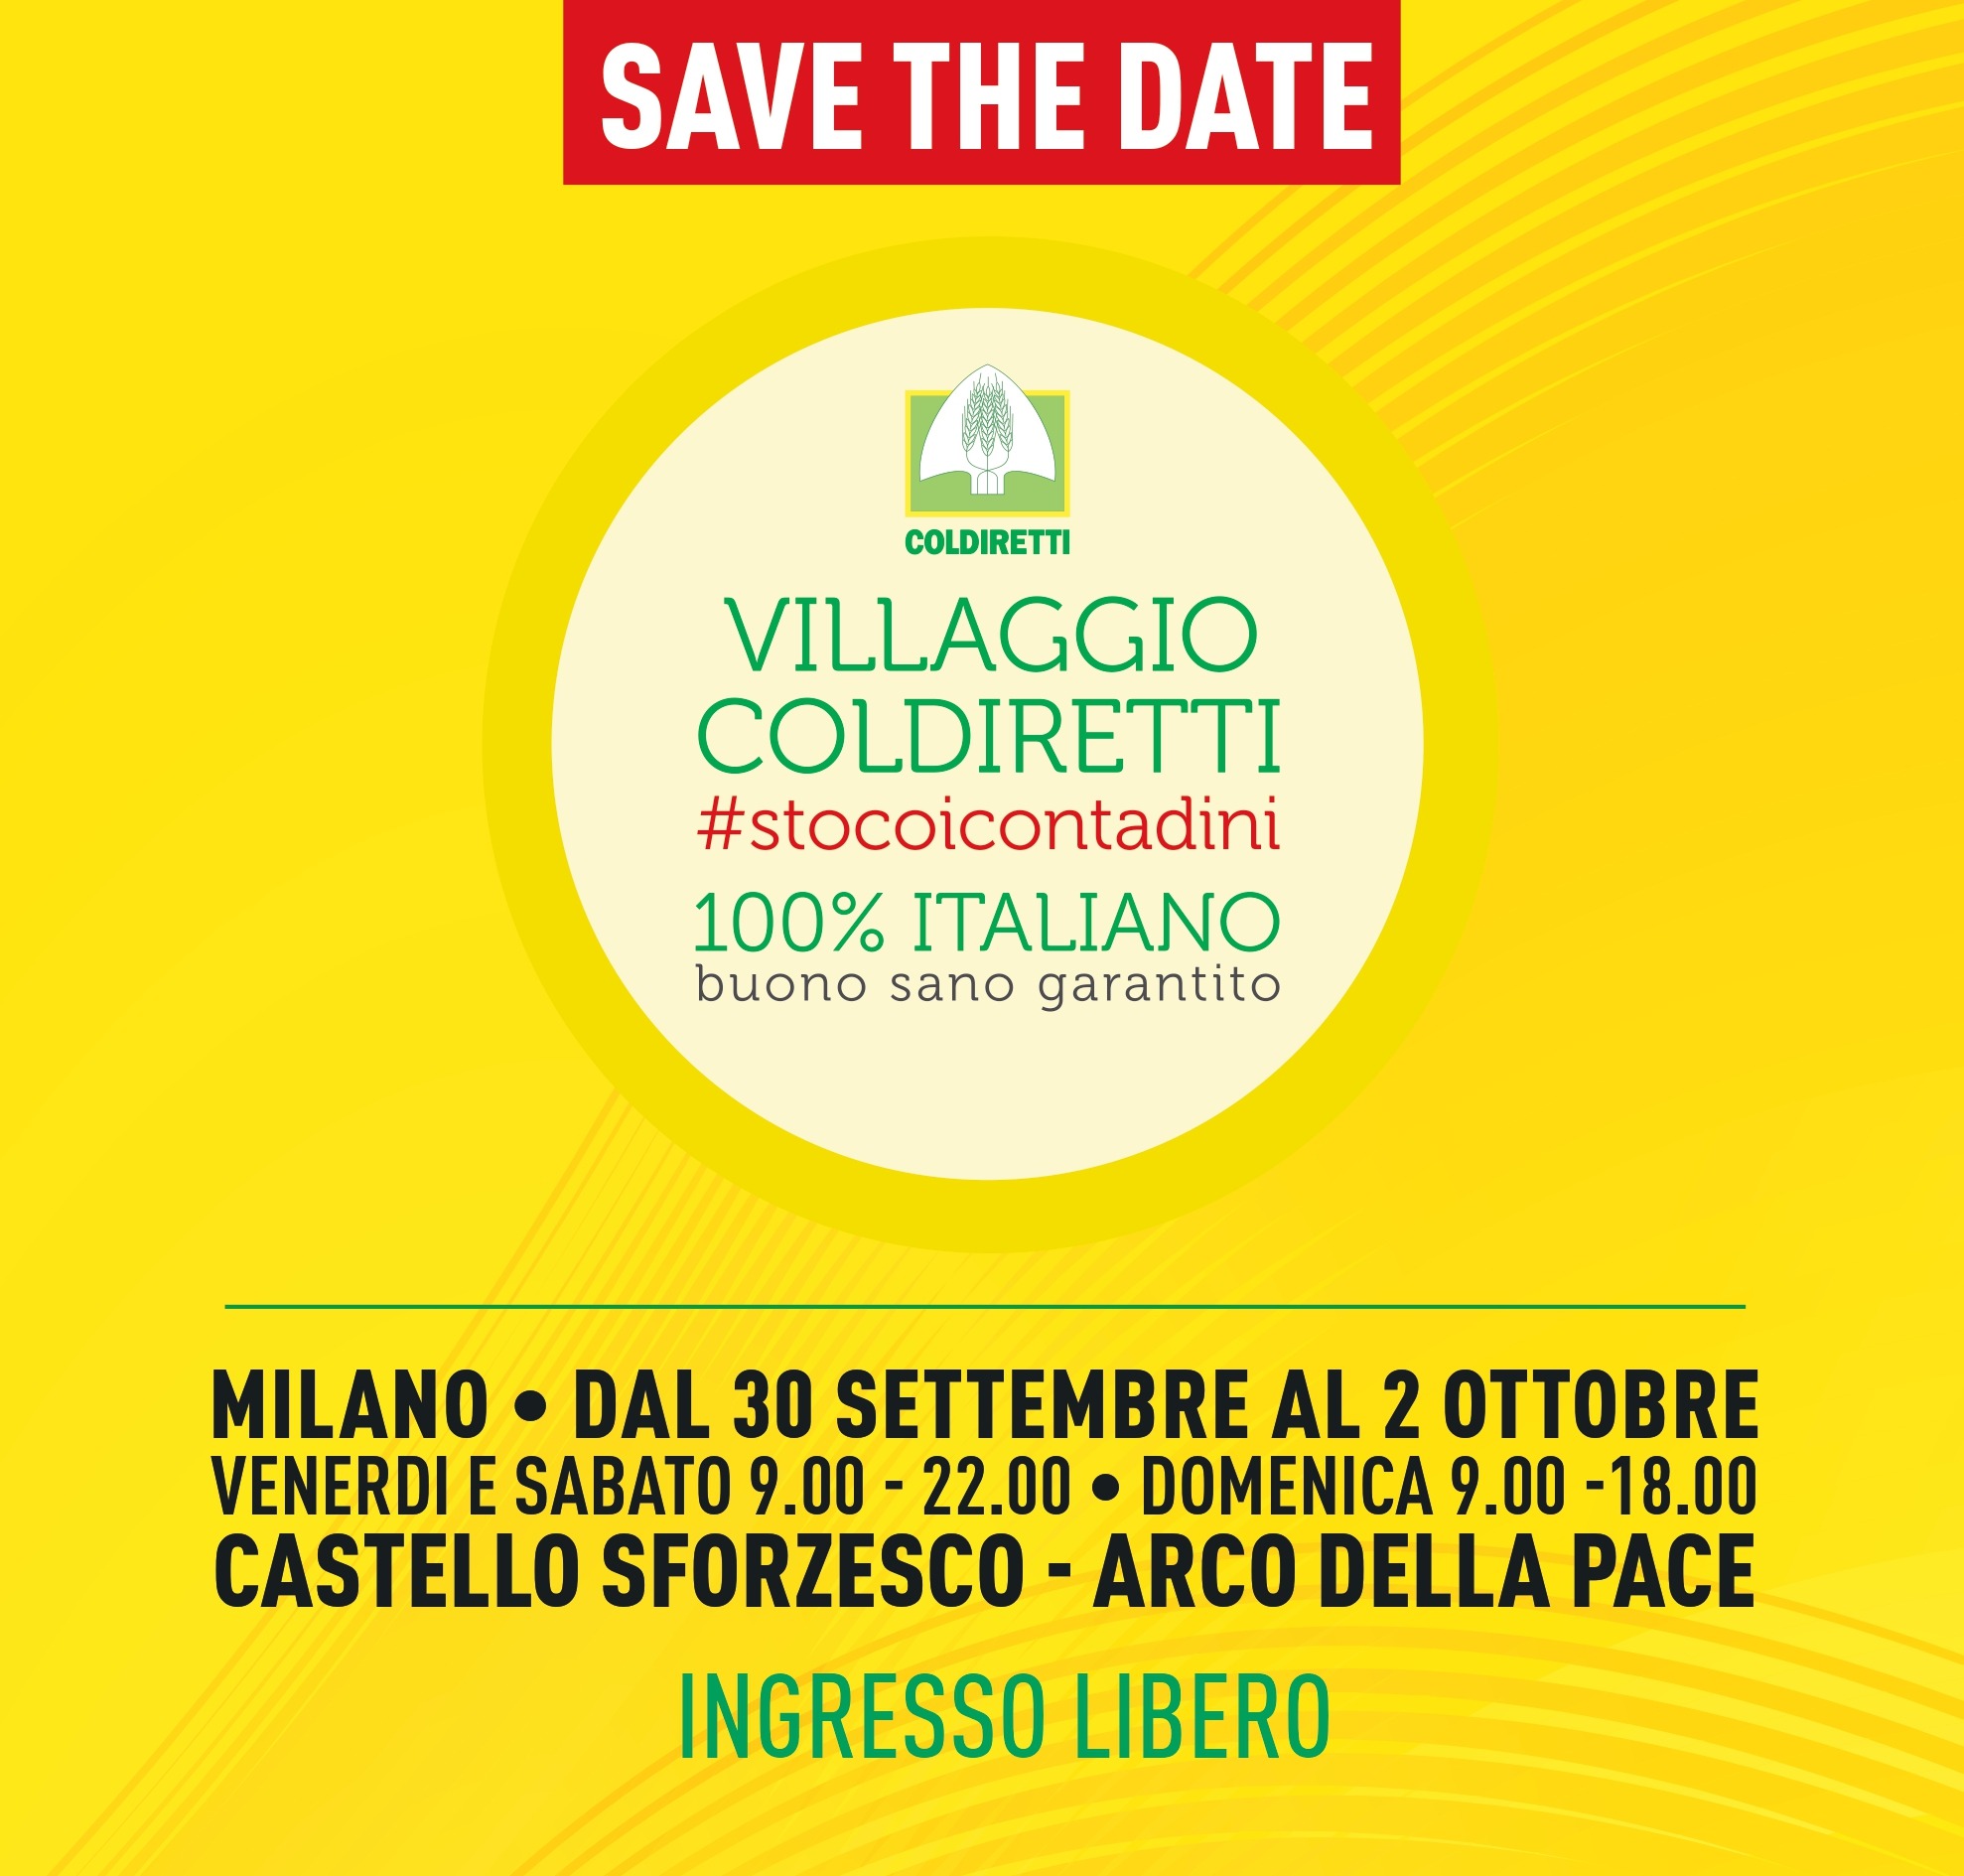 Save the Date Villaggio Coldiretti Milano